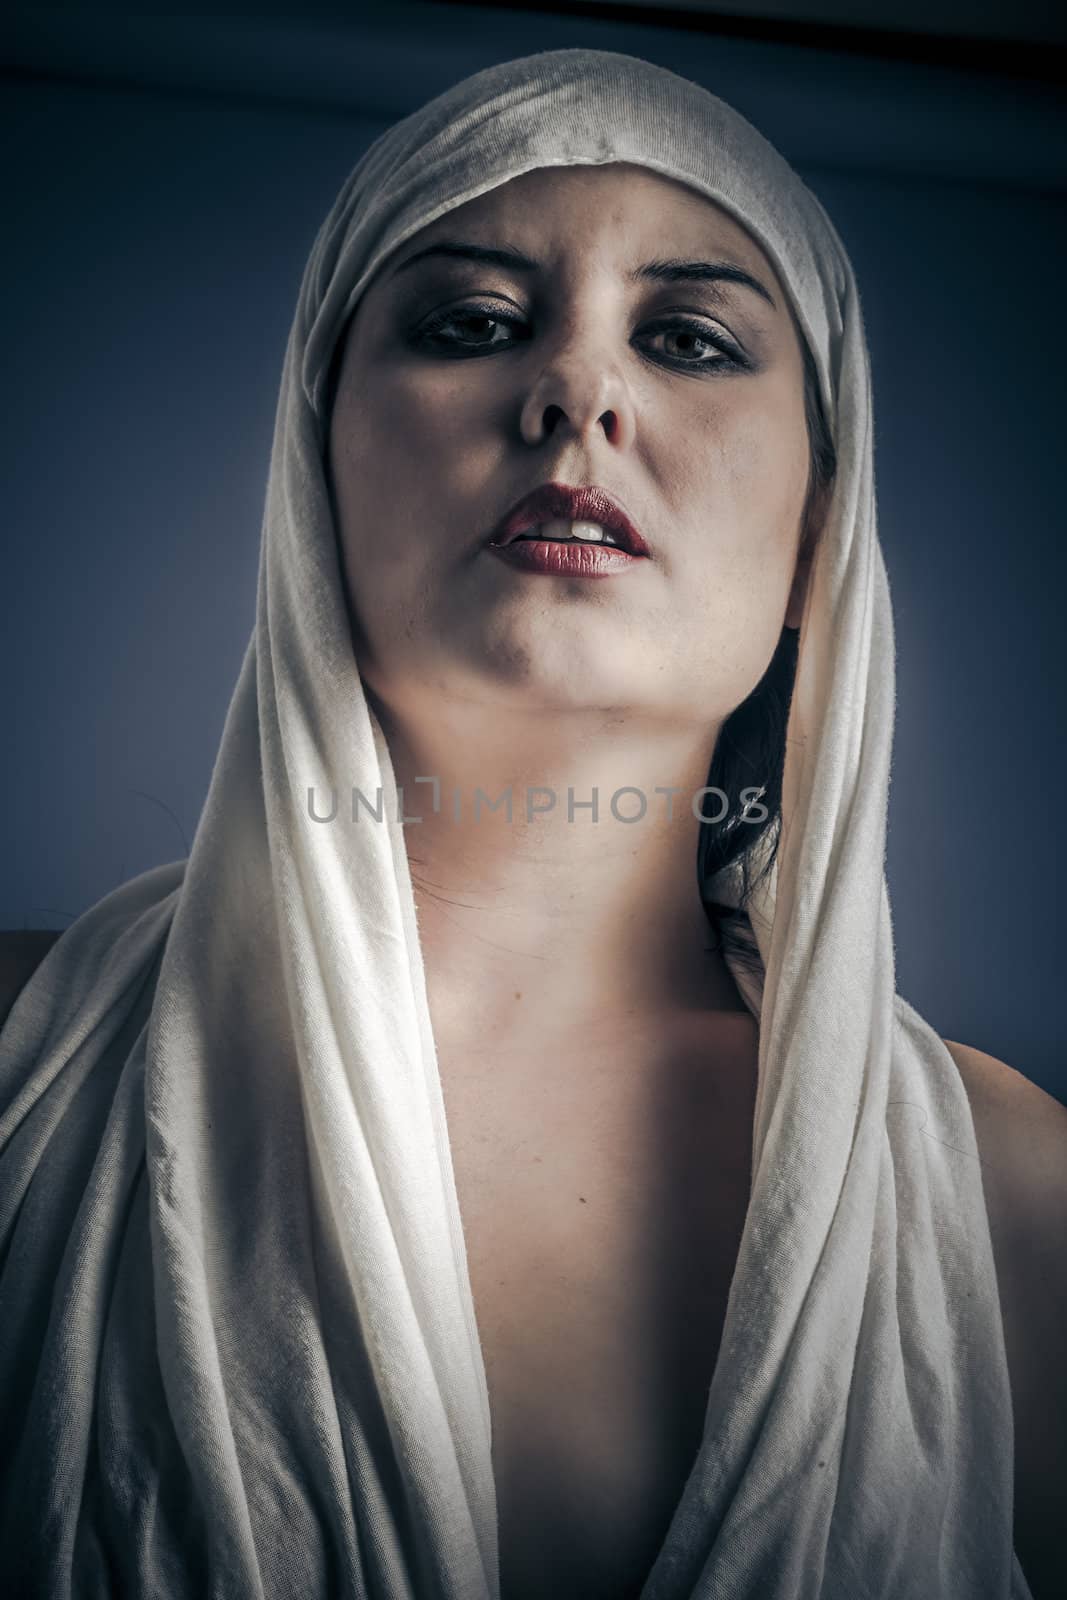 Young Arabic woman. Stylish portrait by FernandoCortes